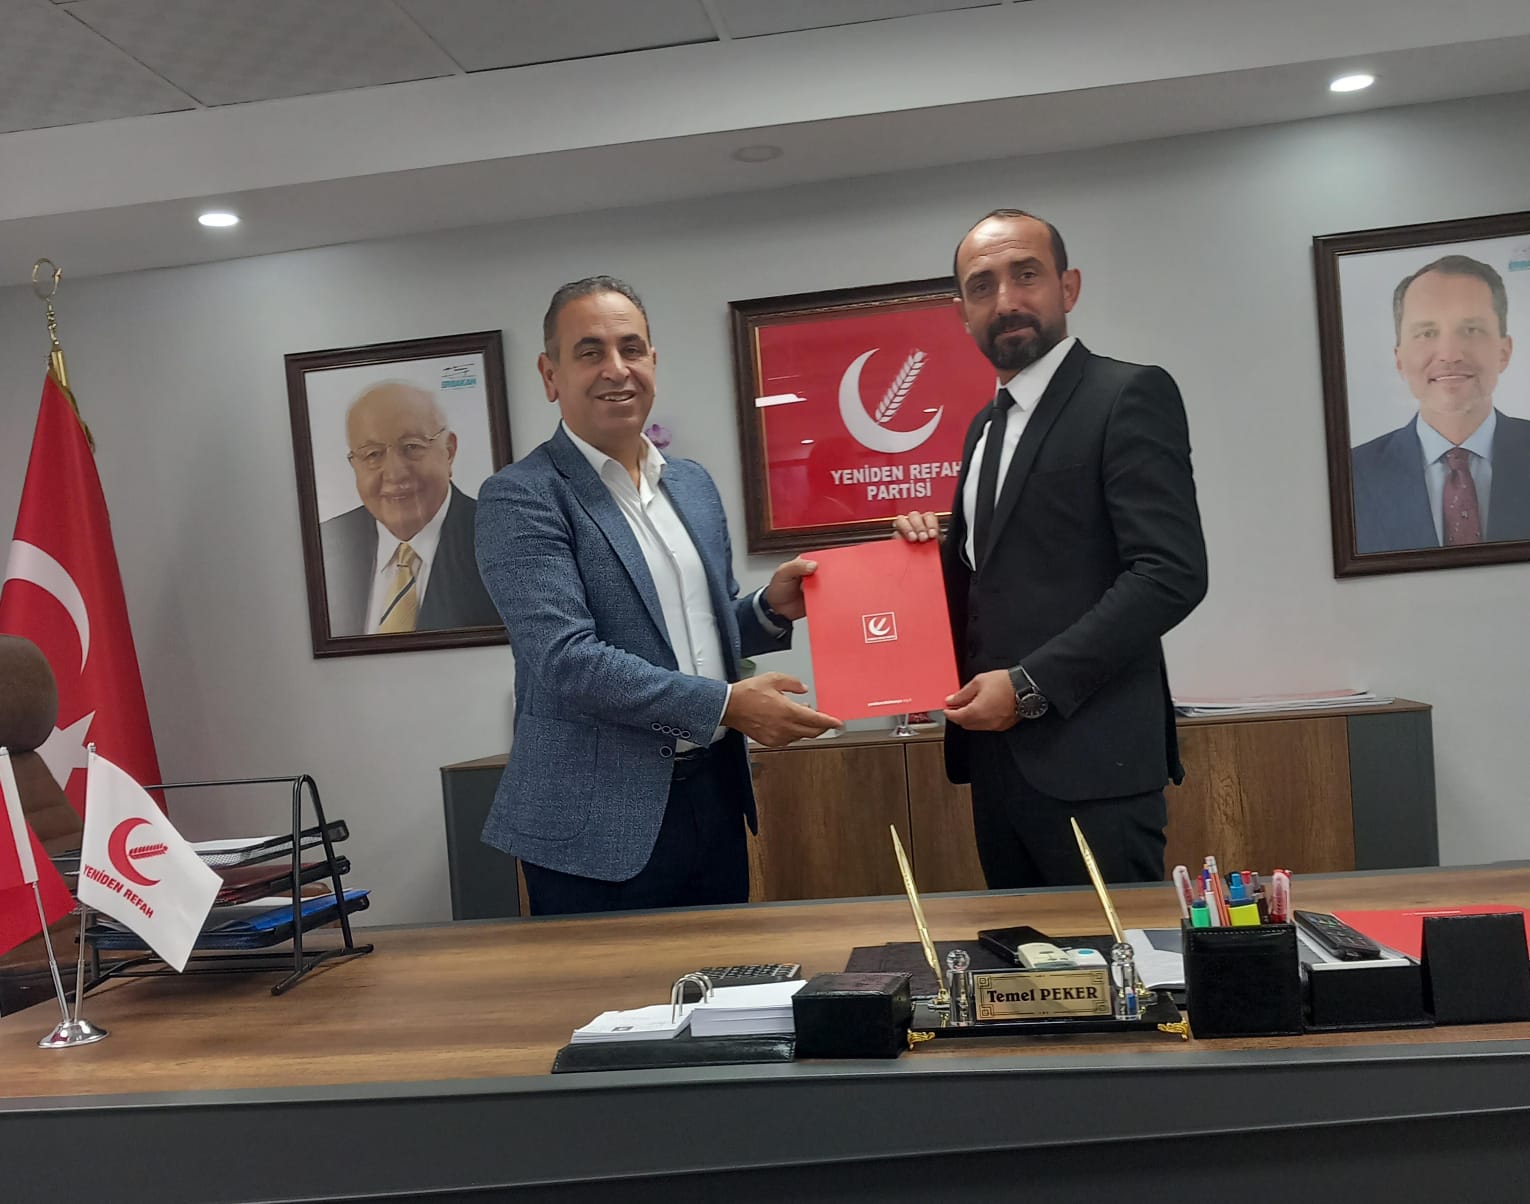 Yeniden Refah Partisi Seydişehir ilçe Başkanlığı görevine Celal UĞURLU atandı.